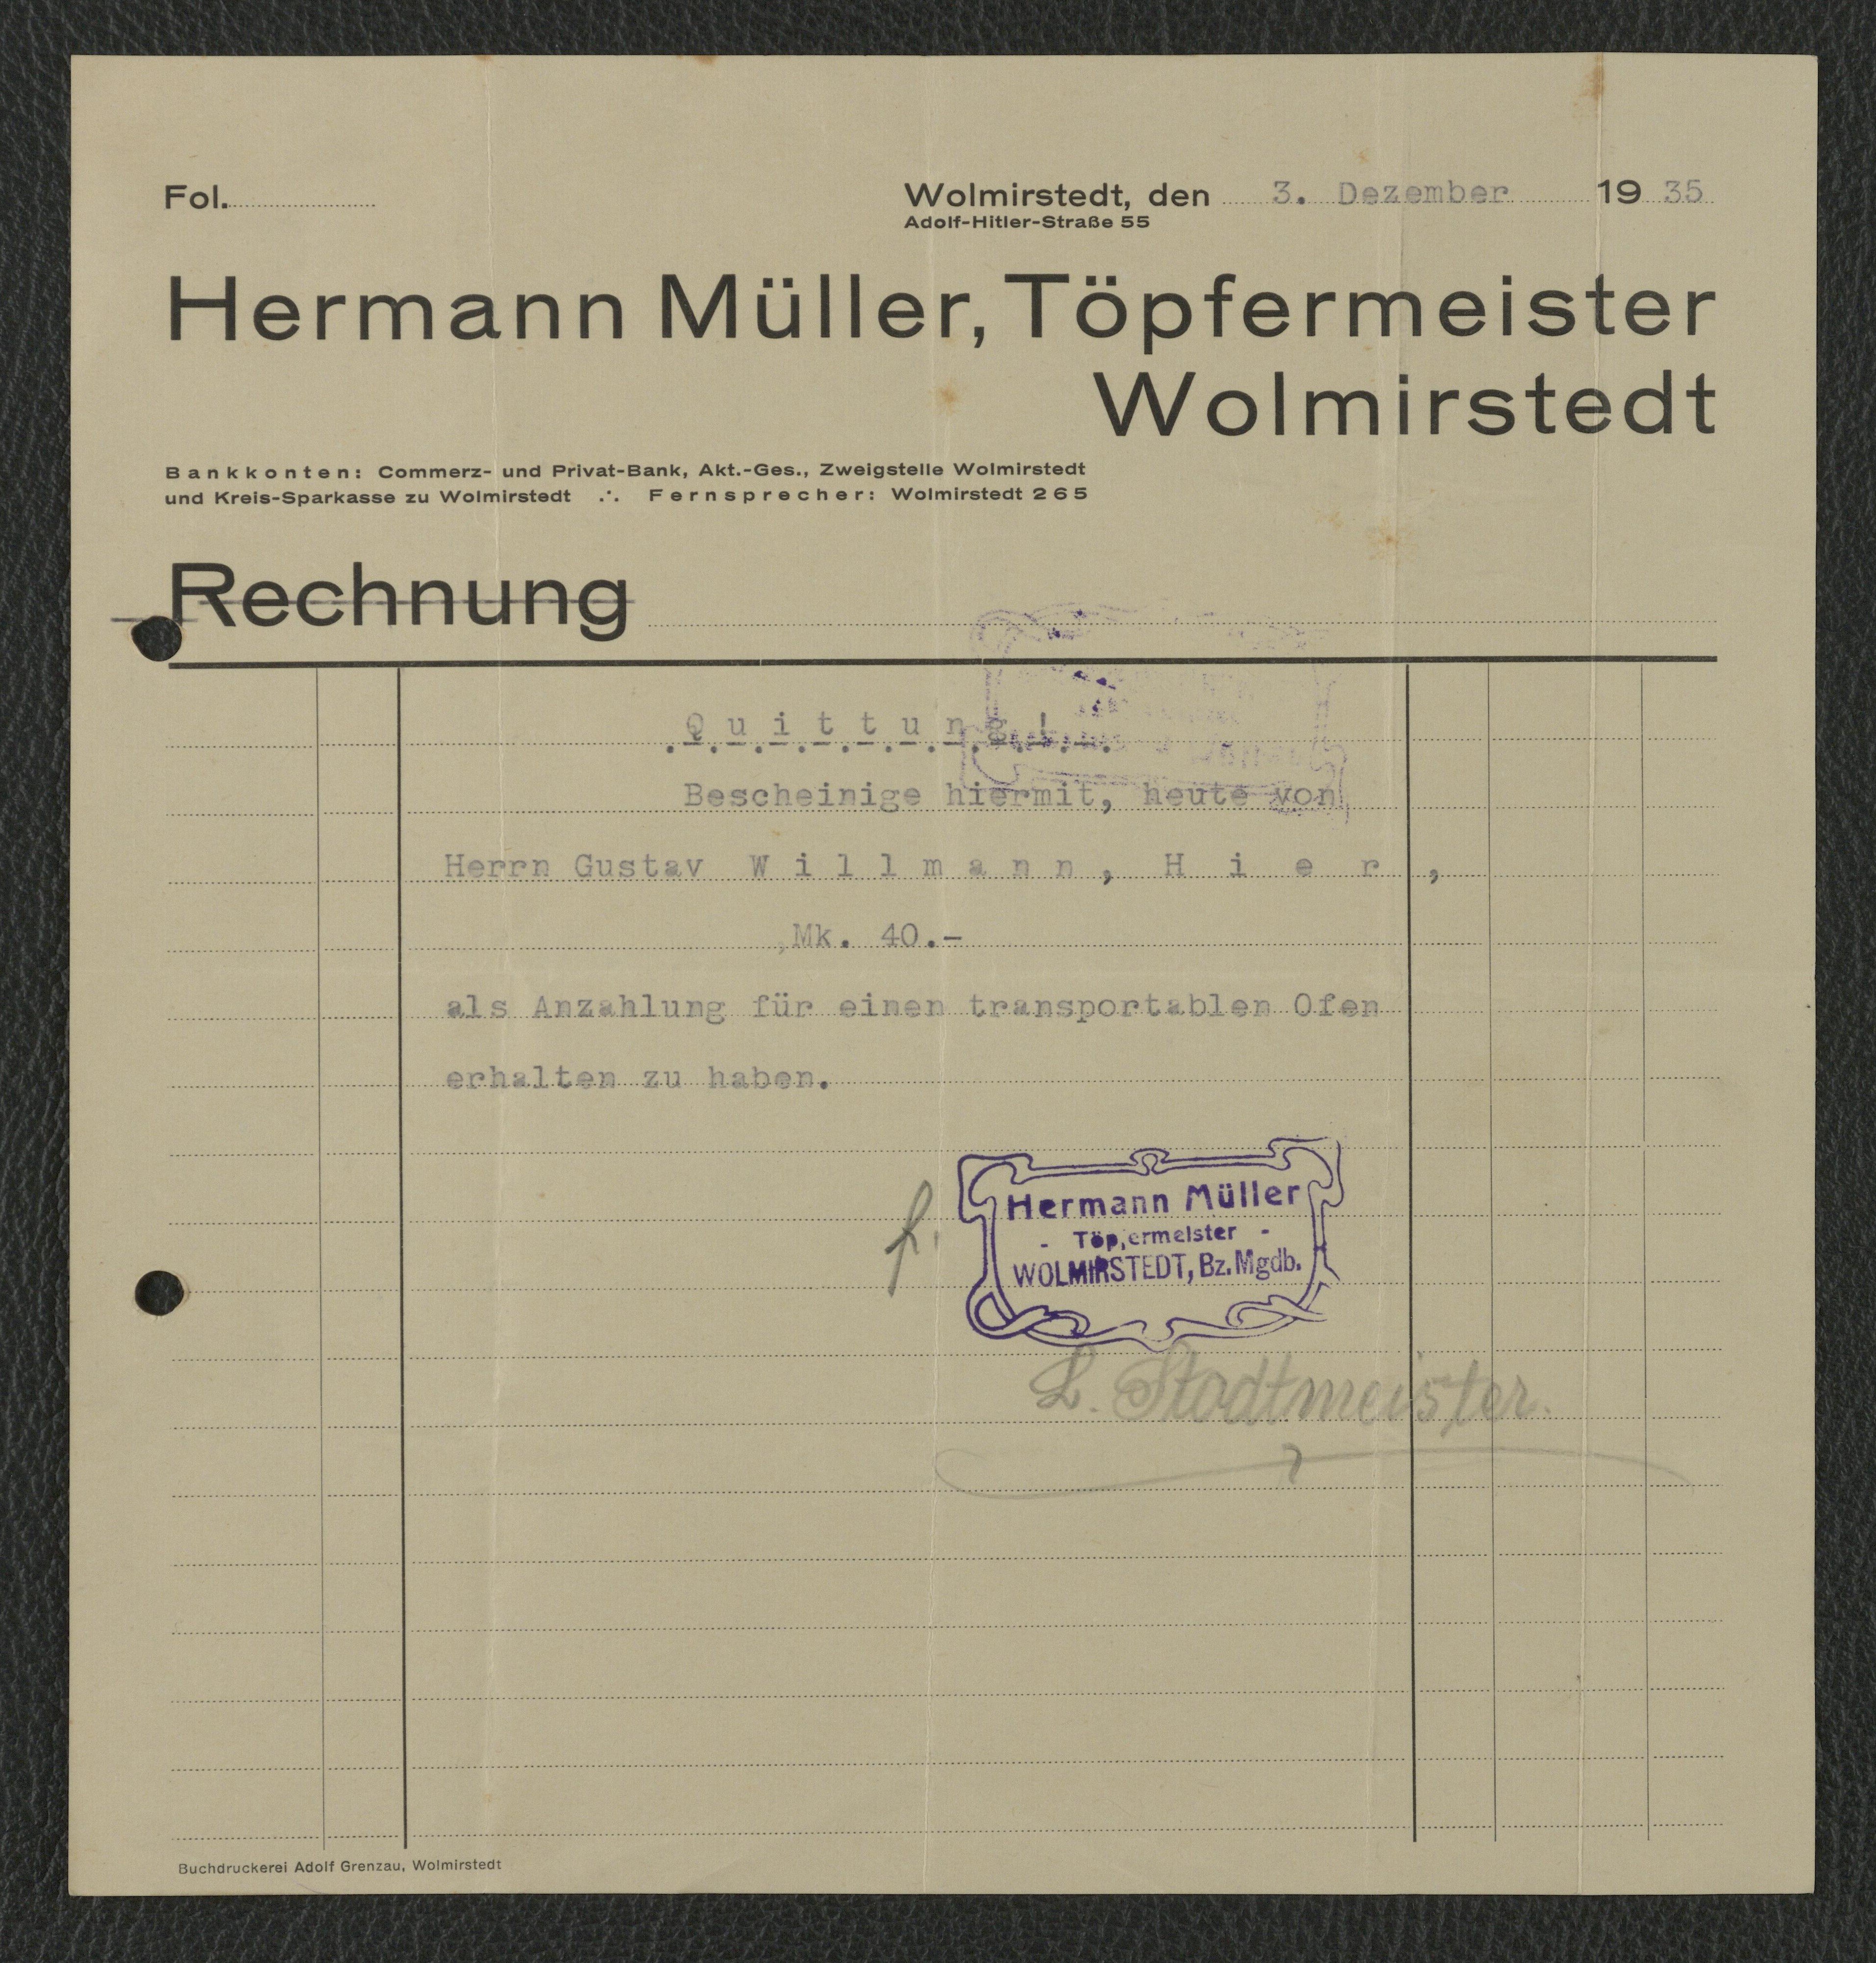 Rechnung Töpfermeister Hermann Müller für Gustav Willmann, Wolmirstedt vom 03.12.1935 (Museum Wolmirstedt RR-F)